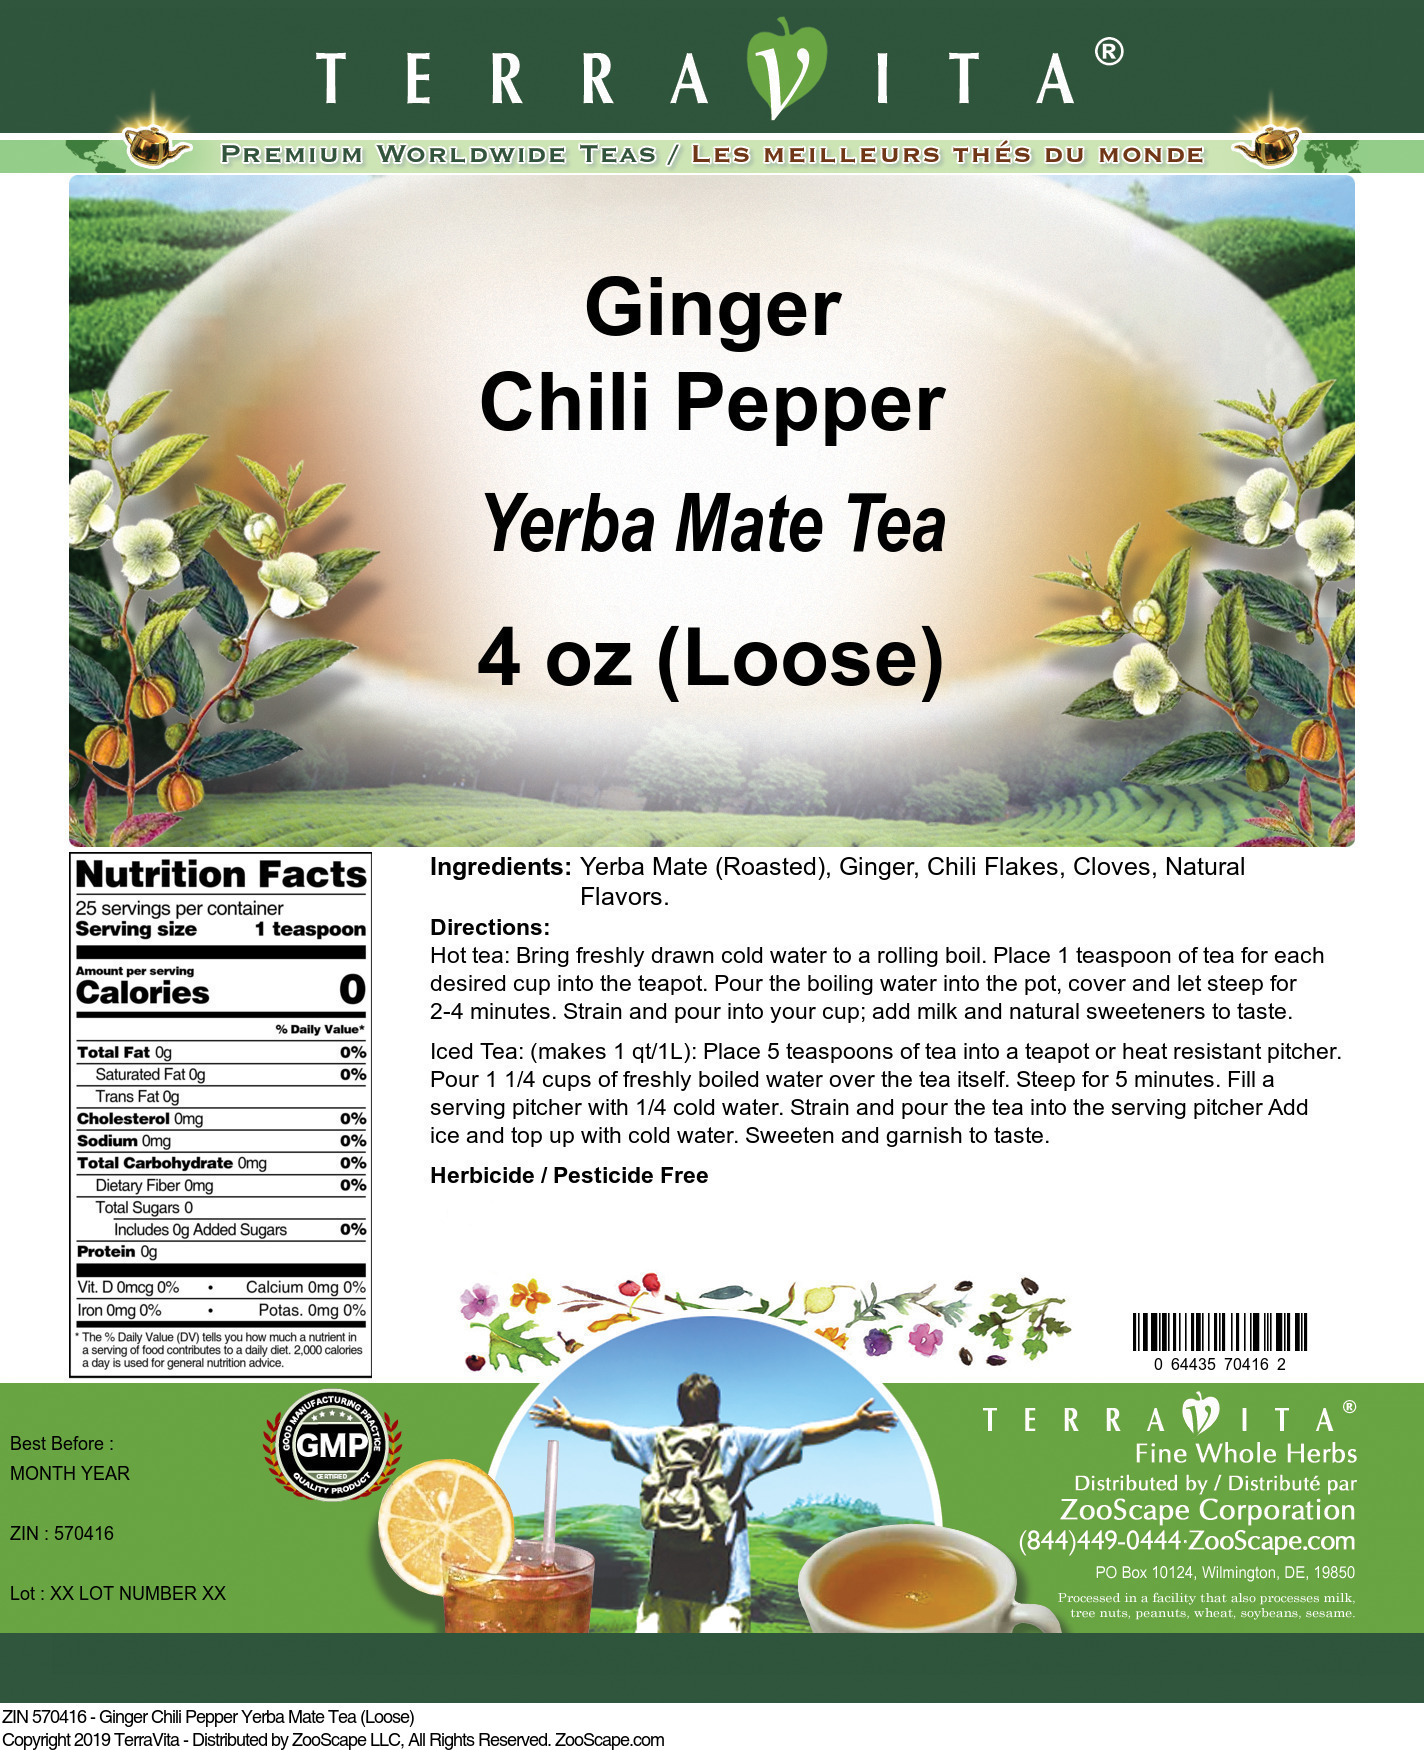 Ginger Chili Pepper Yerba Mate Tea (Loose) - Label